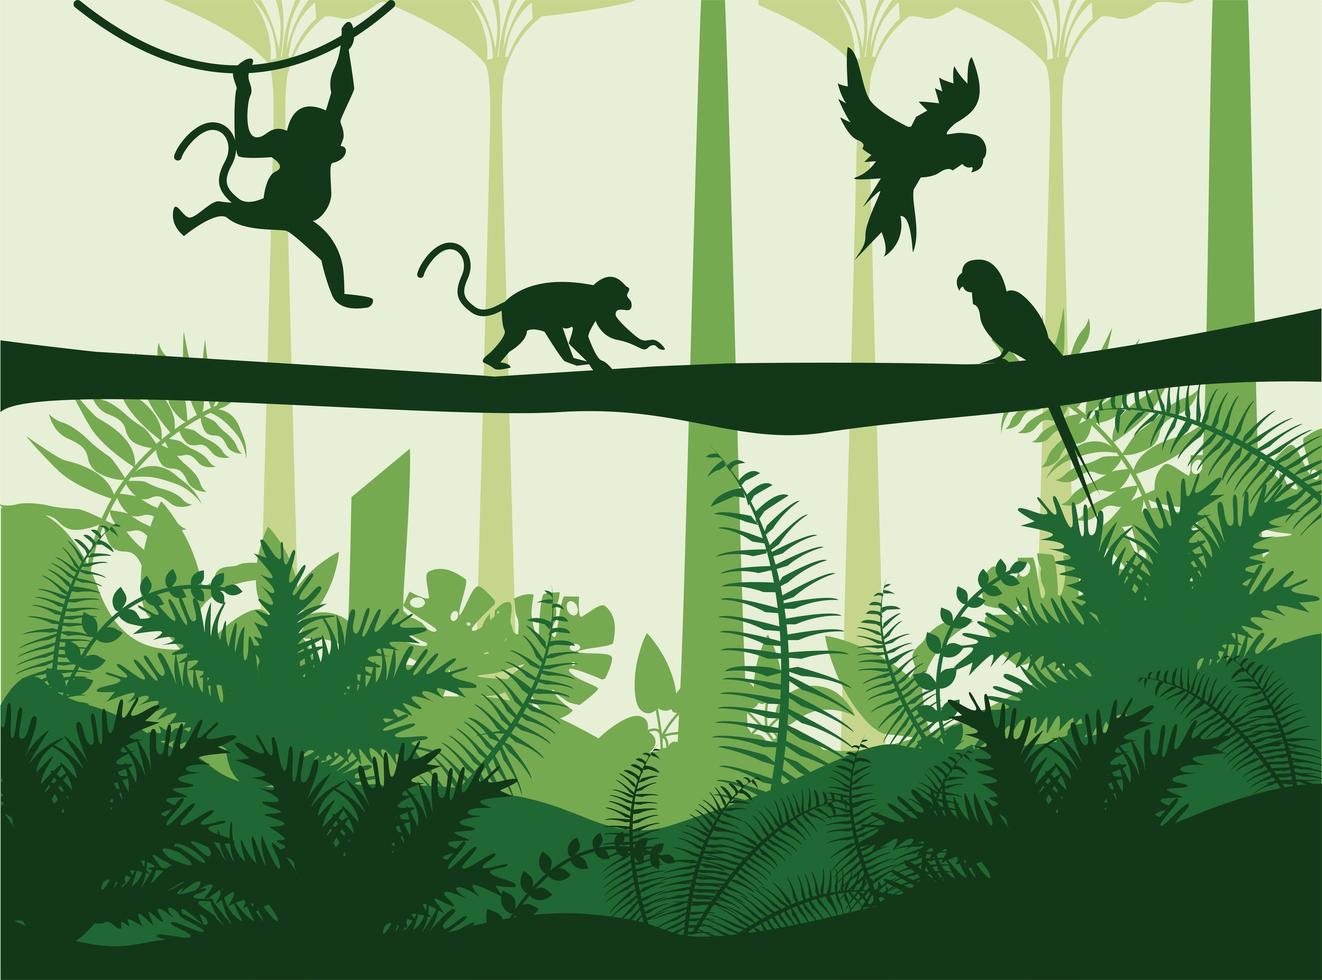 djungel vild natur grön färg landskap med apor och papegojor scen vektor